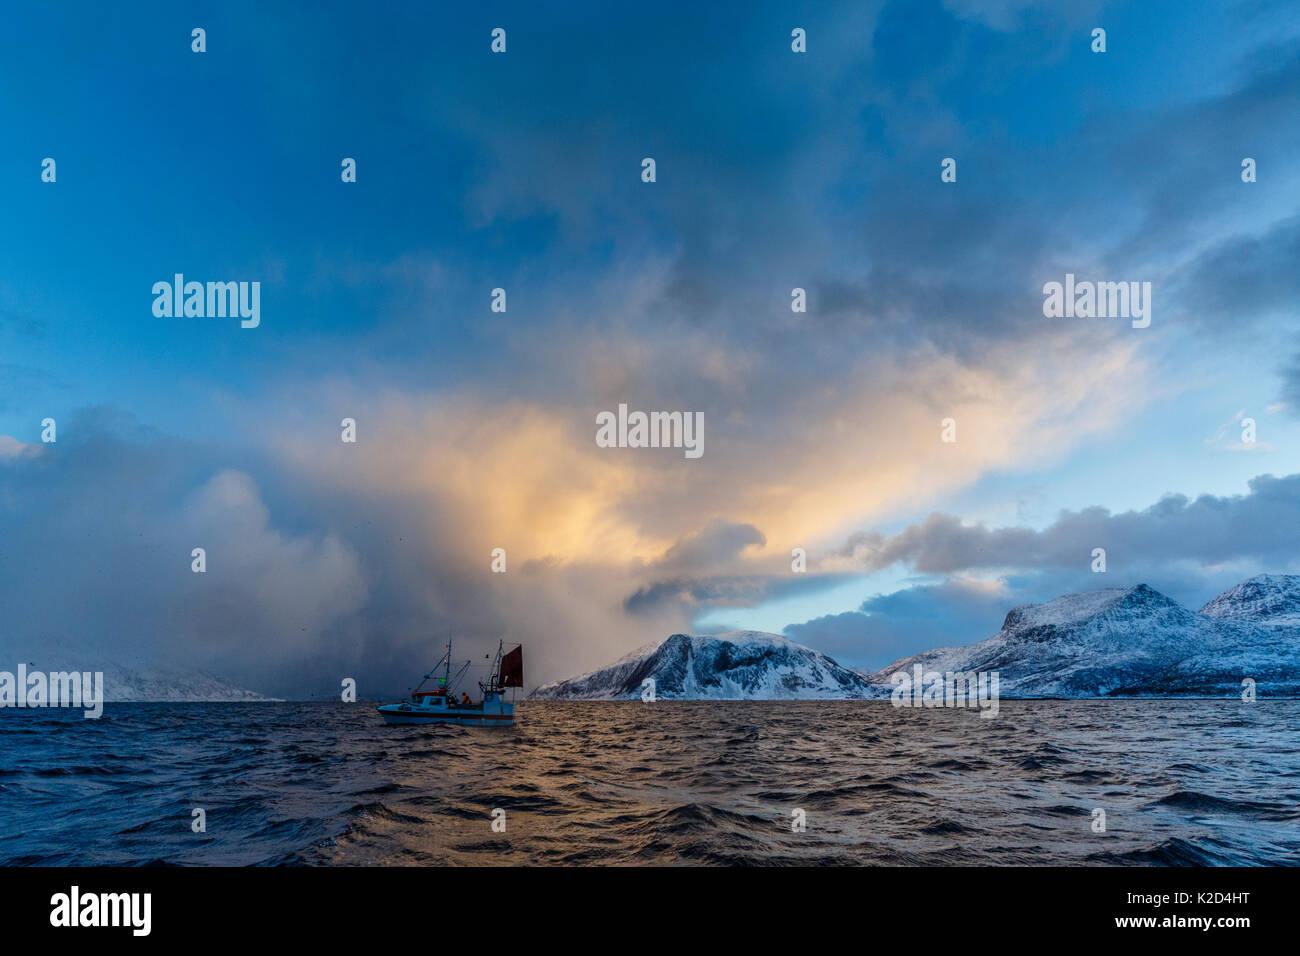 Piccola barca da pesca vicino a riva, Kvaloya, Troms, Norvegia, novembre 2014. Foto Stock